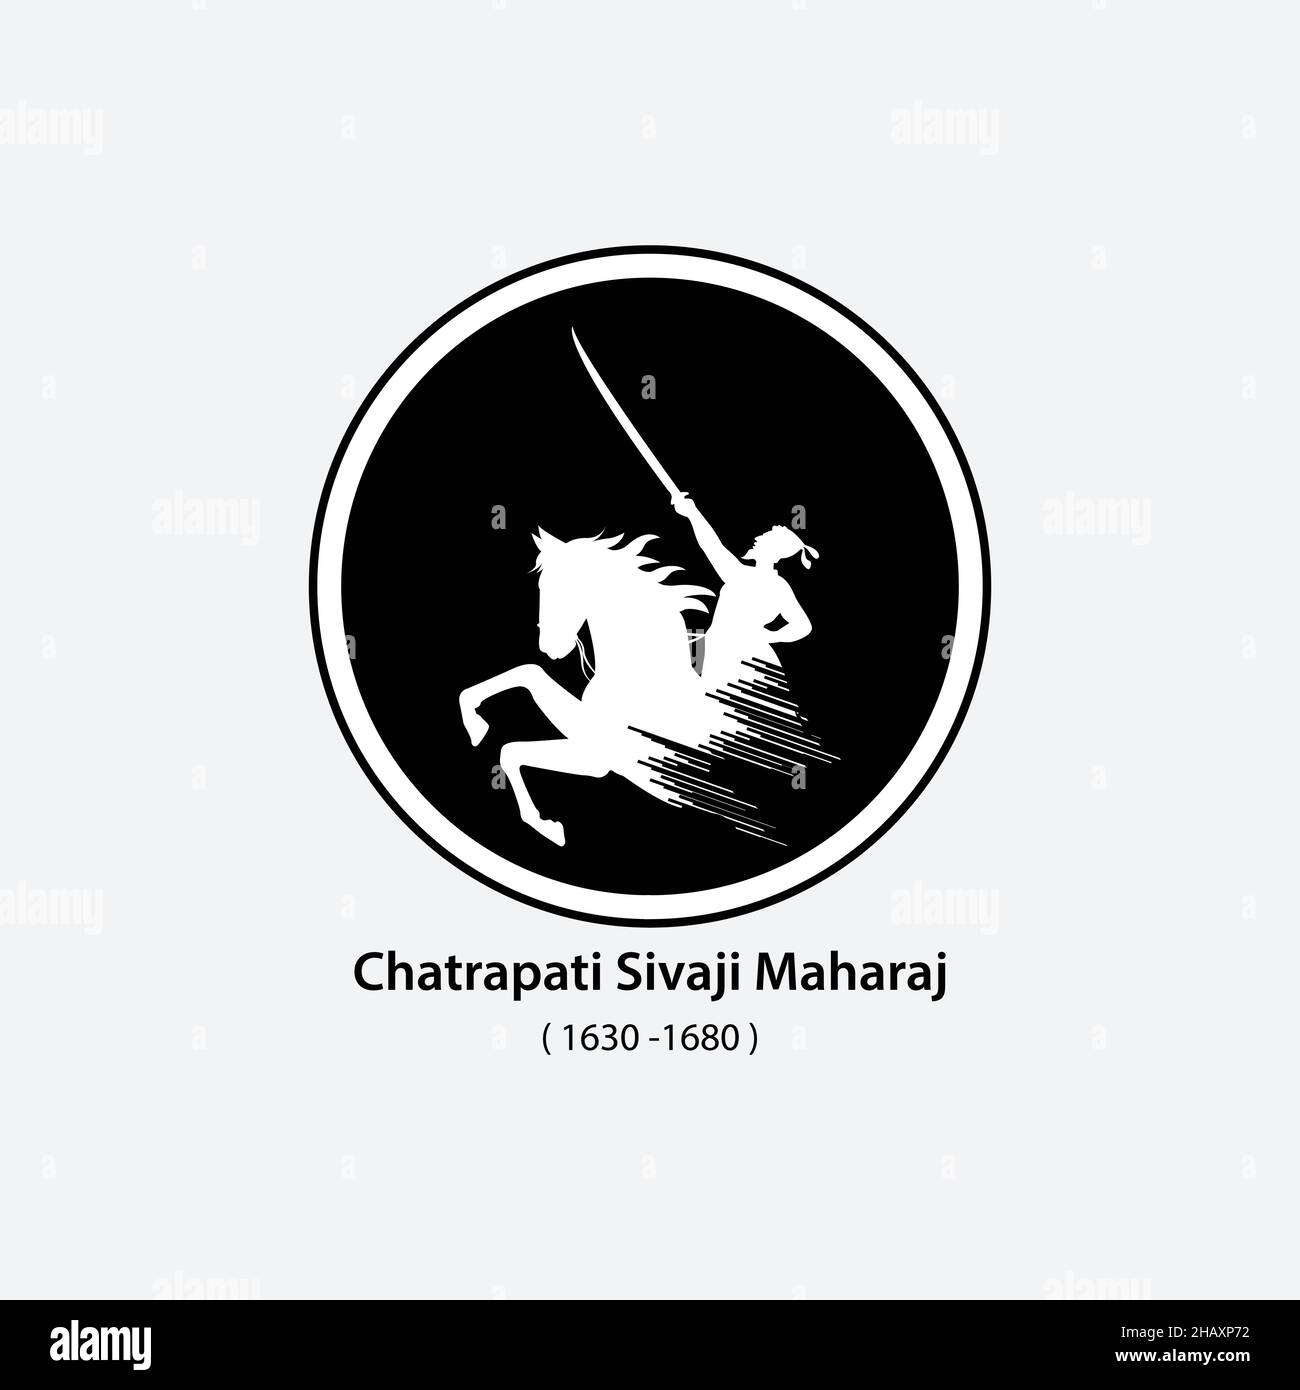 Chatrapati Sivaji Maharaj. Un combattente contro i Moguls, immagine vettoriale di vaji. Illustrazione Vettoriale